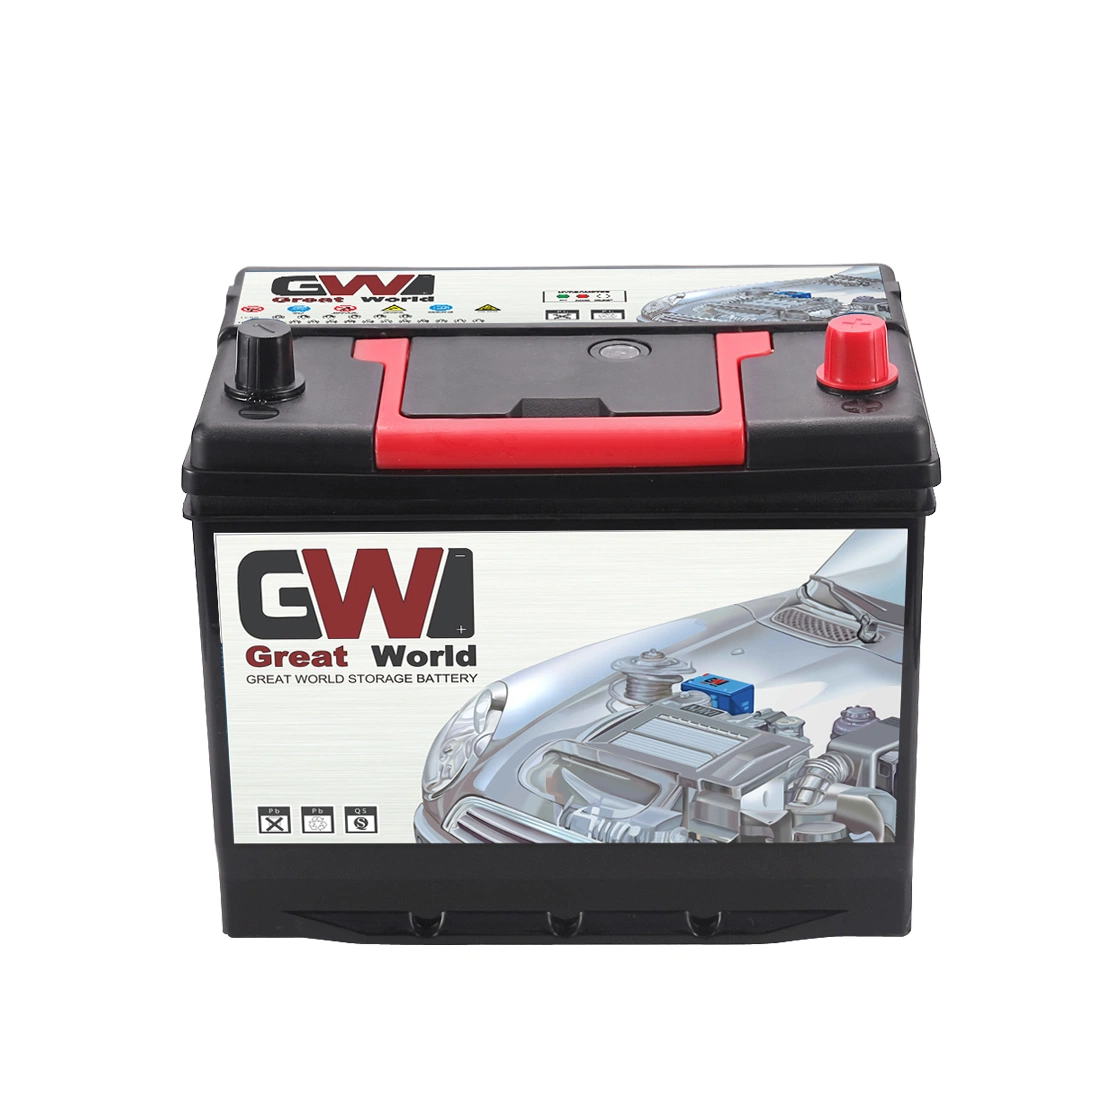 Gw 55D26 Batterie automobile au plomb-acide SMF 12V 60ah Batterie de voiture Batterie de camion sans entretien Batterie auto Accepter la personnalisation de base.